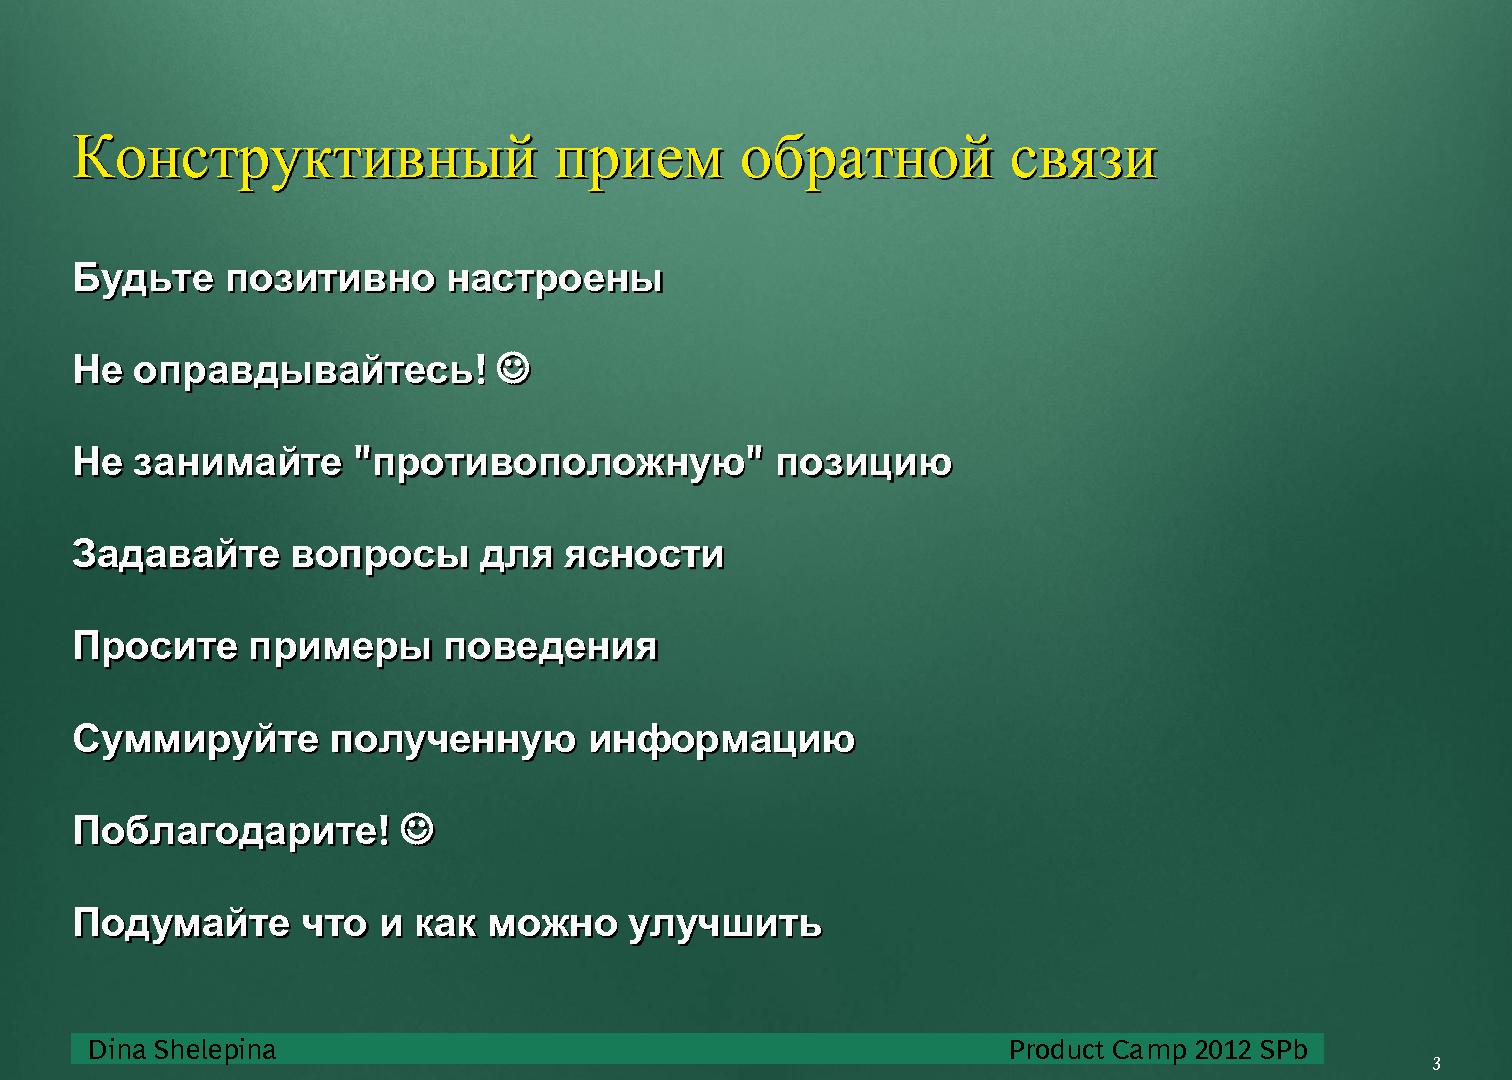 Файл:Взаимодействие в команде (Дина Шелепина, ProductCampSPB-2012).pdf